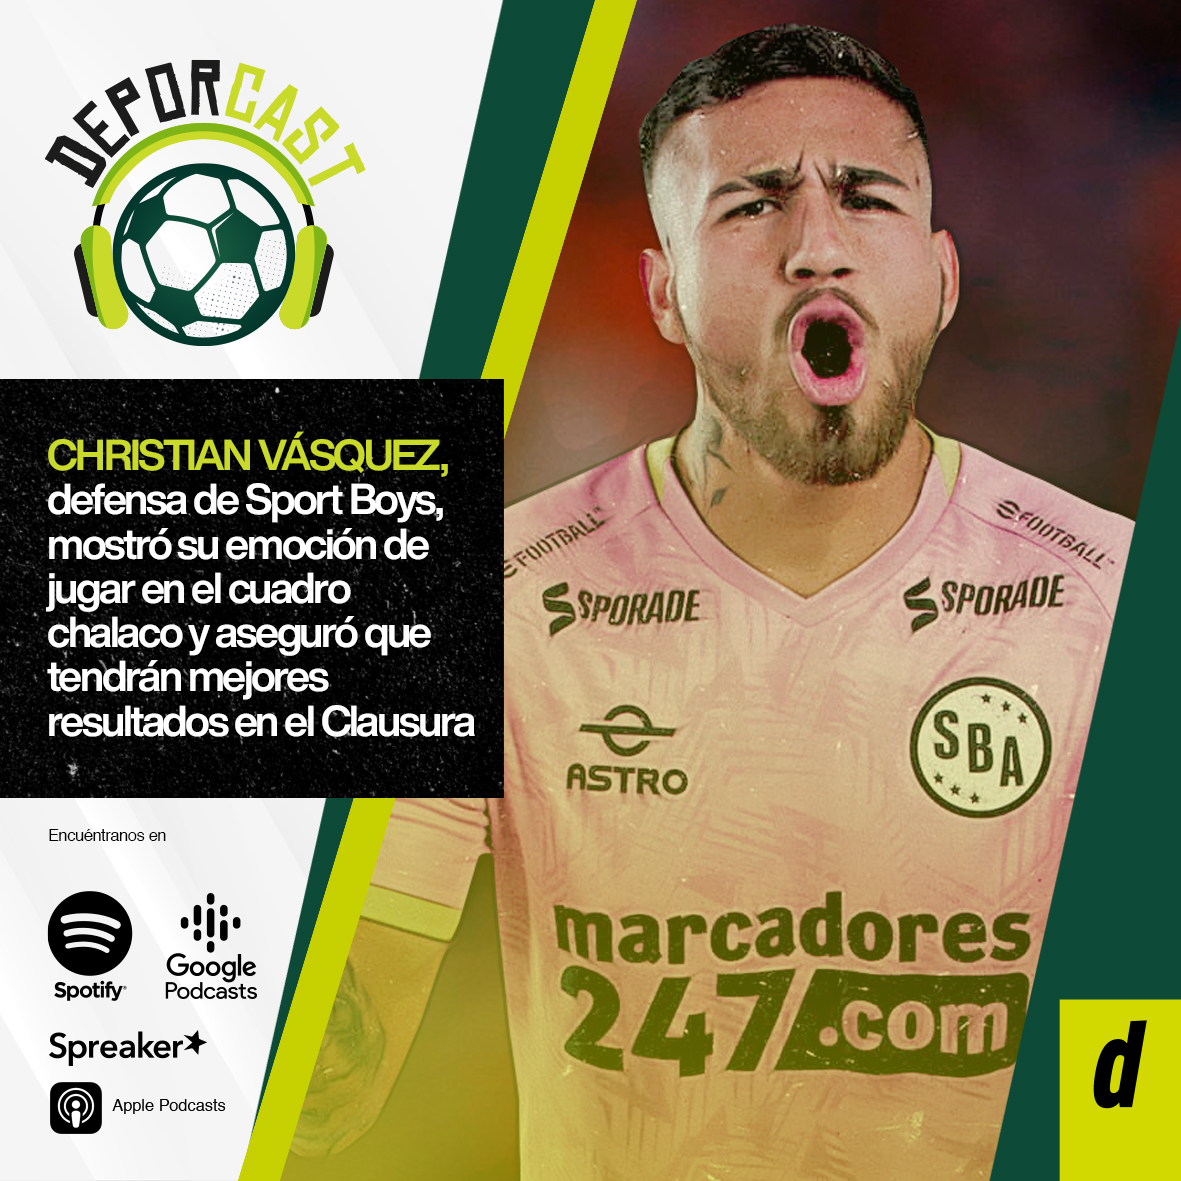 Christian Vásquez, defensa de Sport Boys, mostró su emoción de jugar en el cuadro chalaco y aseguró que tendrán mejores resultados en el Clausura